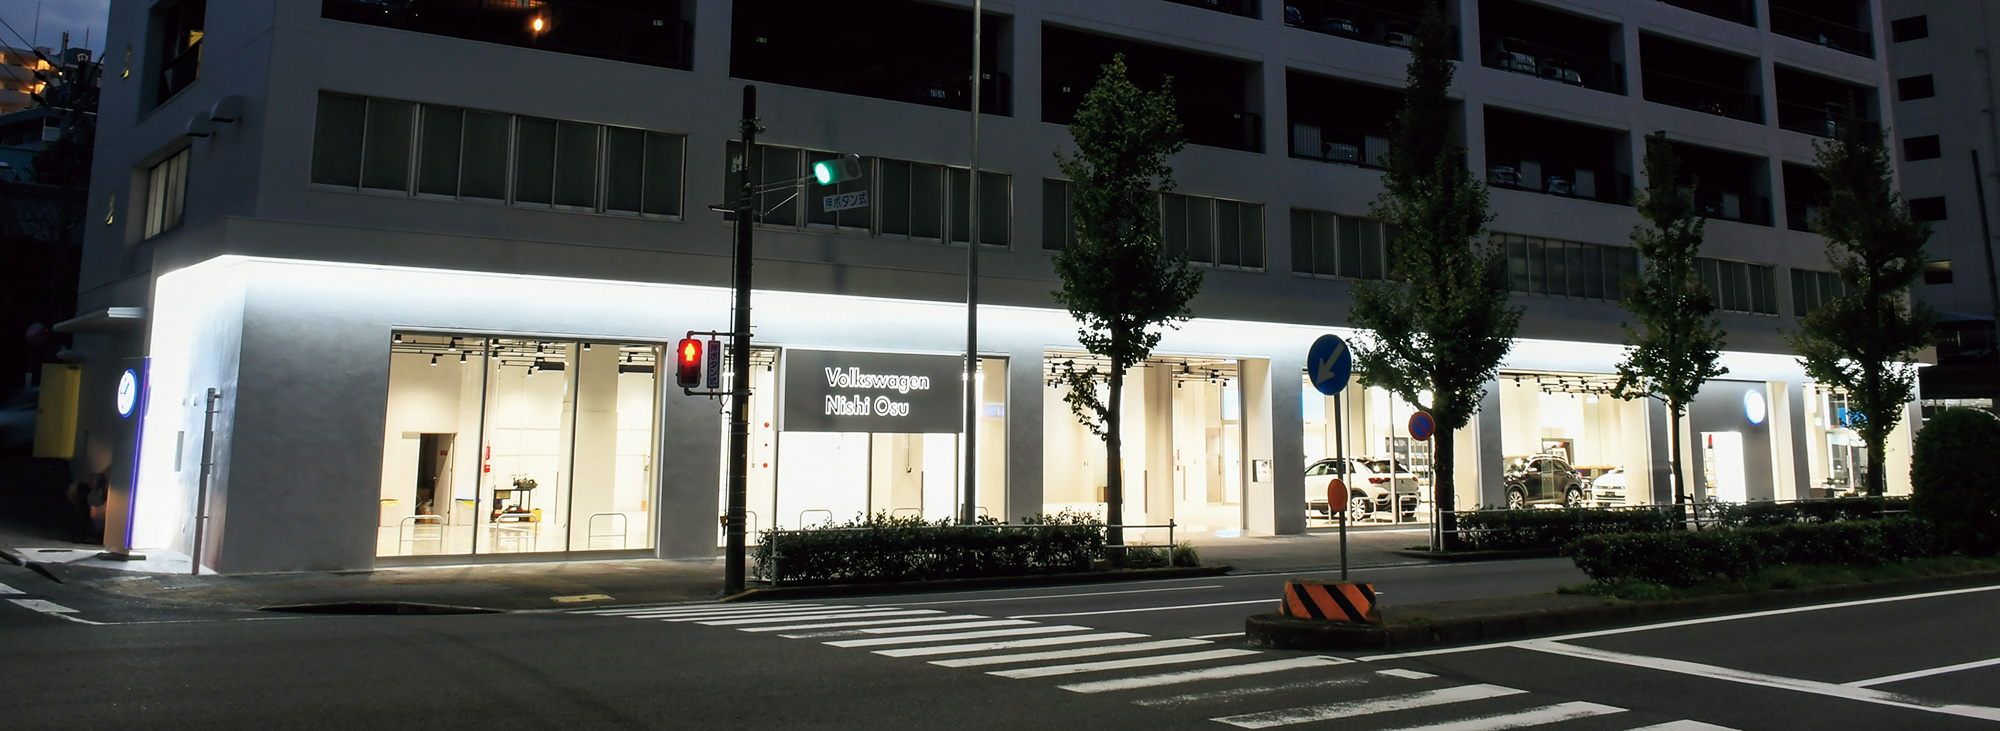 Volkswagen西大須 店舗